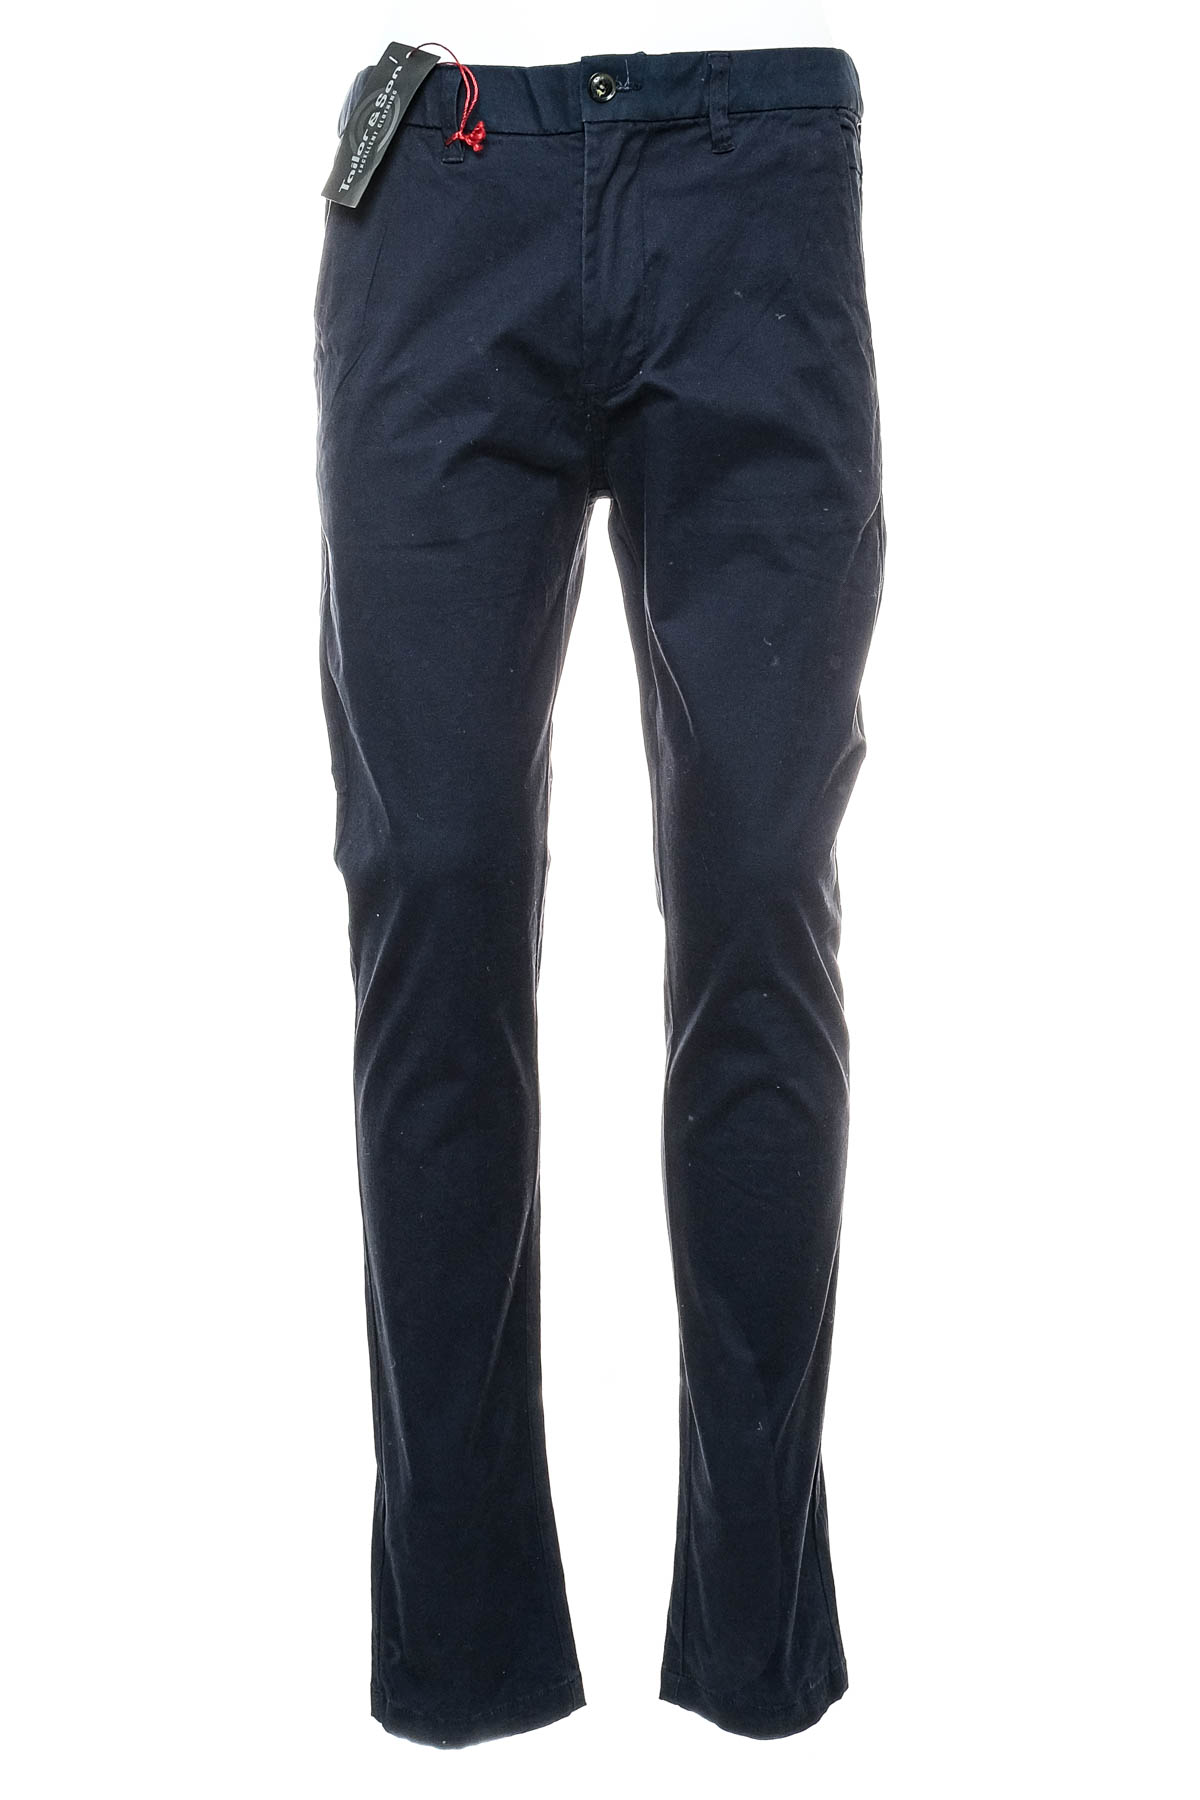 Men's trousers - Tailor & Son - 0